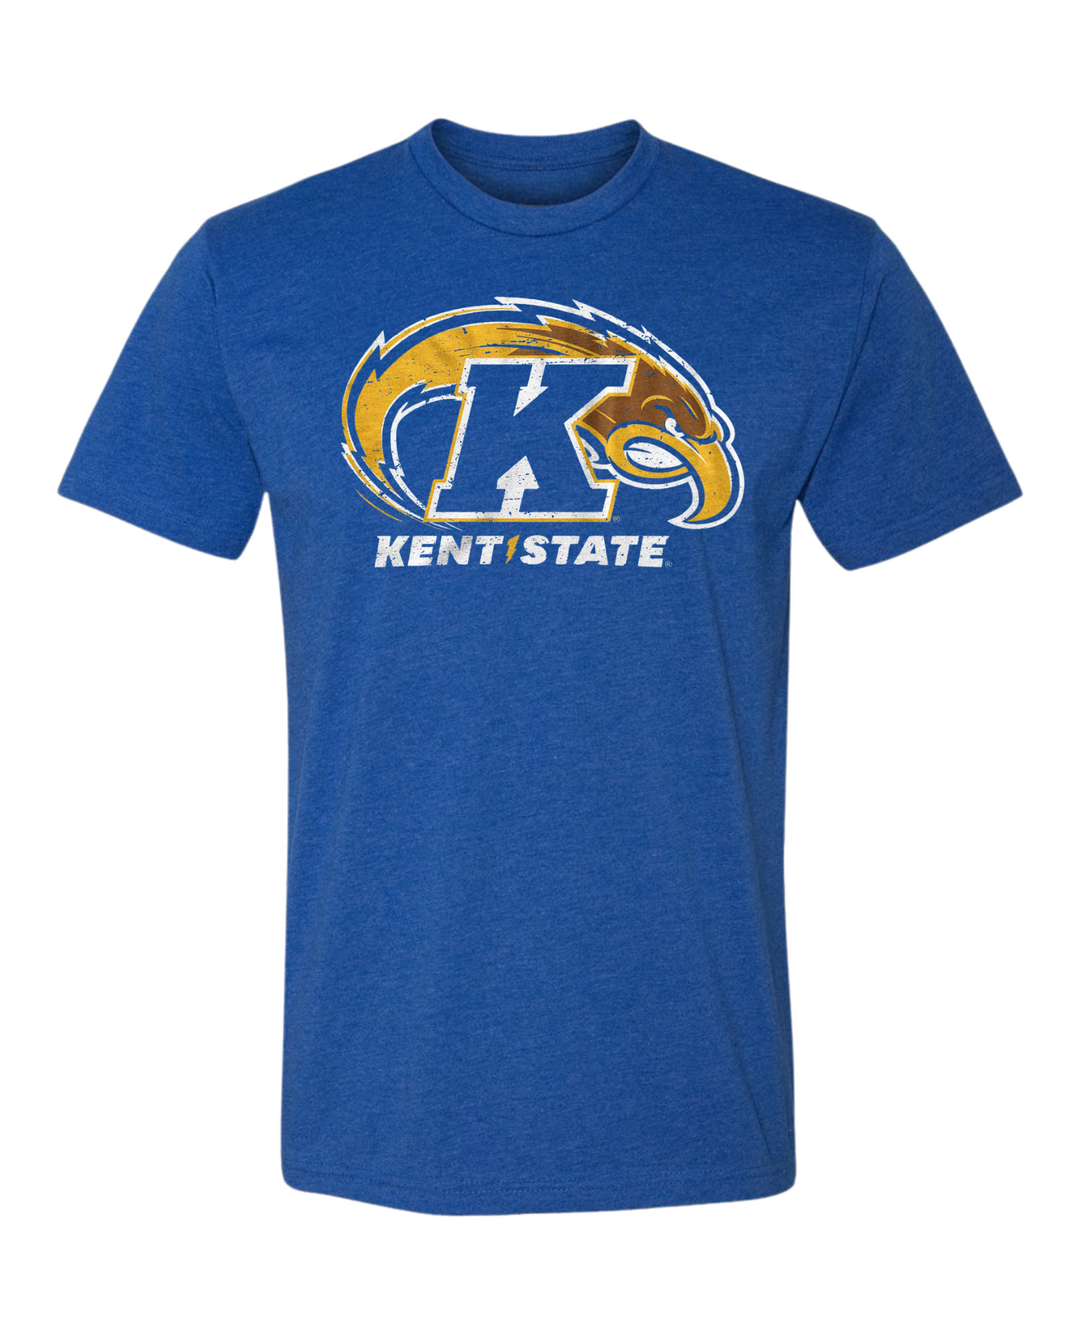 Kent State University Golden Flashes Primary Logo Unisex T-shirt (Royal Blue) Mock up